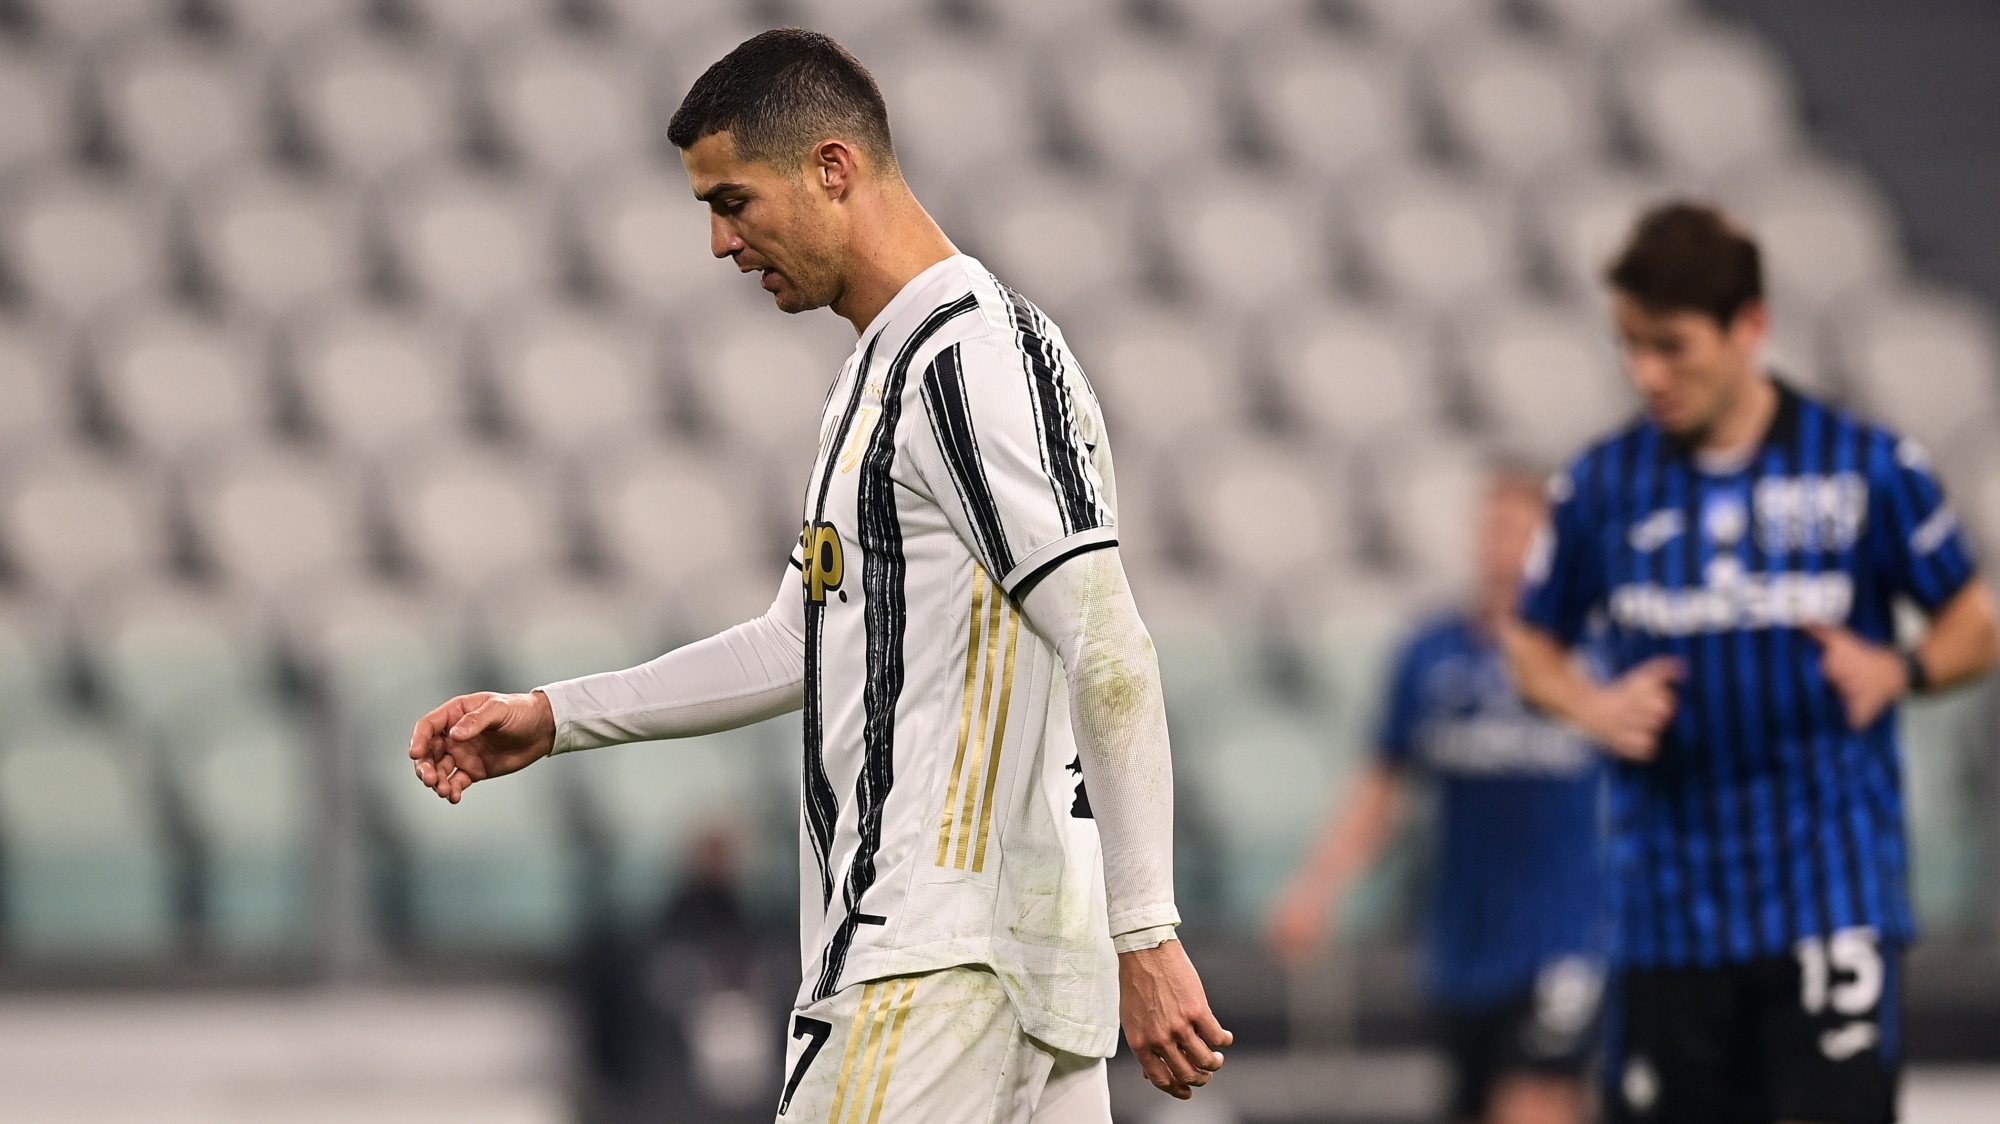 Ronaldo falhou o terceiro penálti na Serie A em três temporadas, tendo convertido 21 tentativas